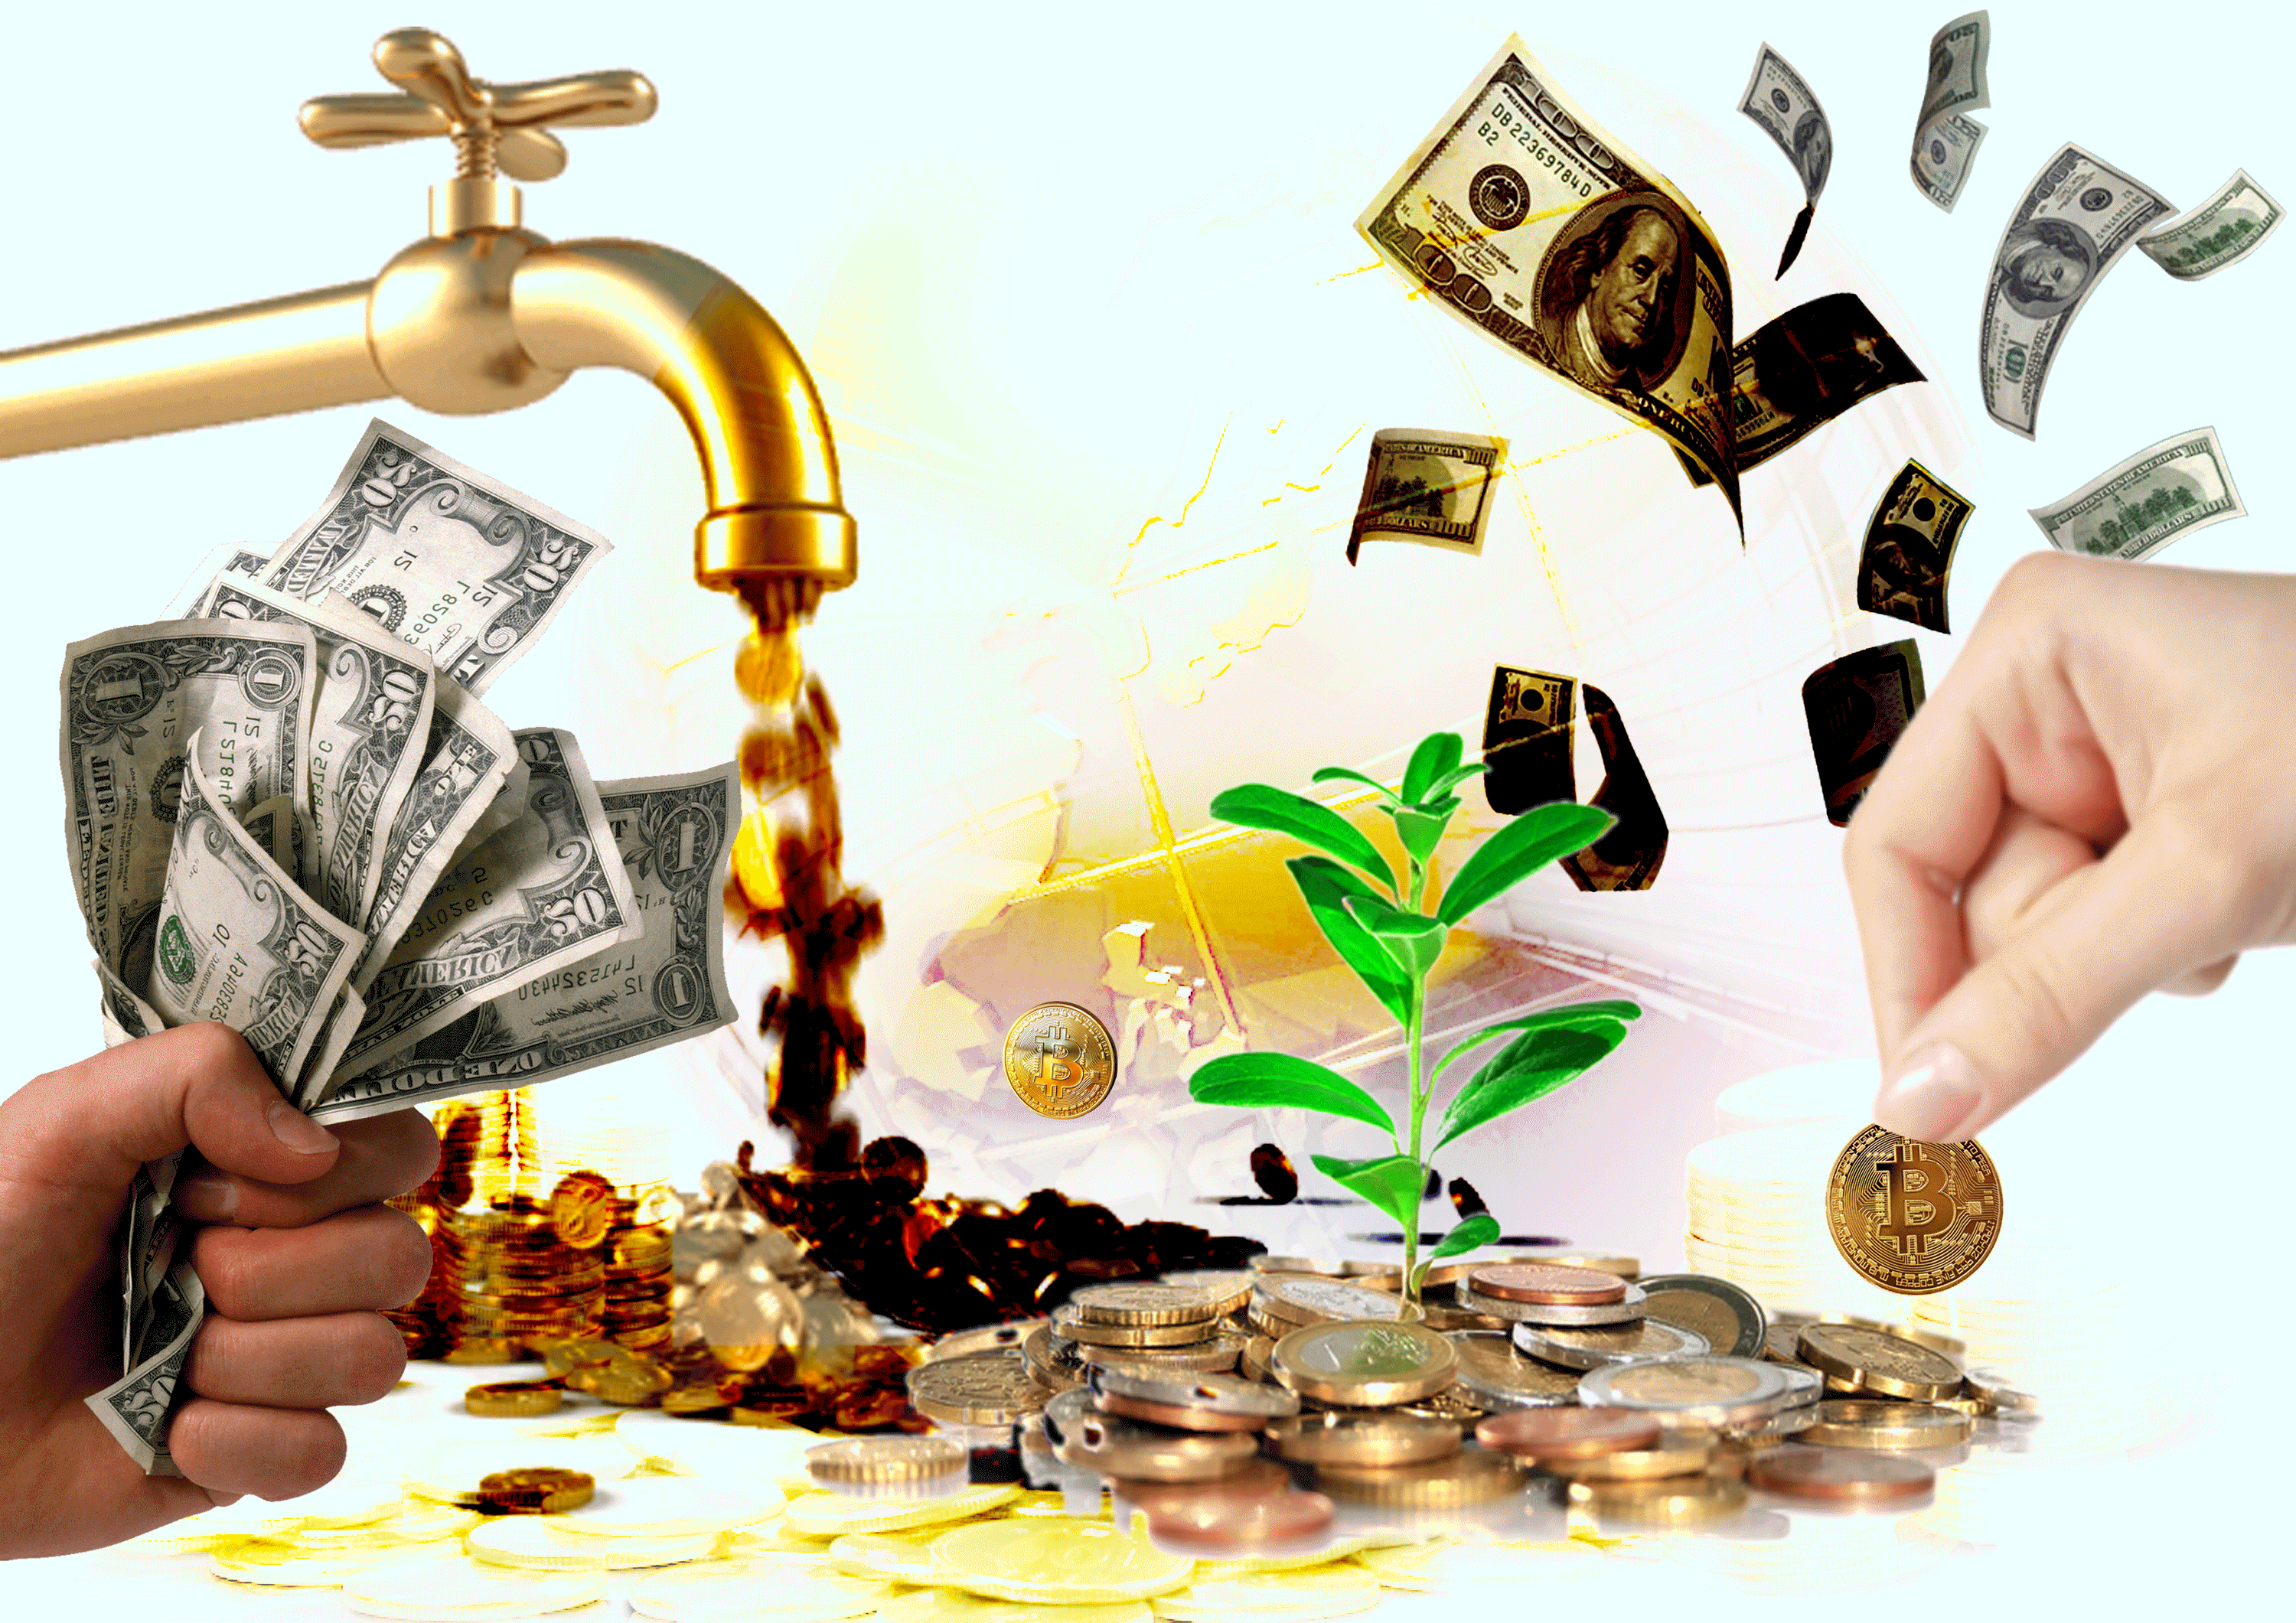 Religion of Money